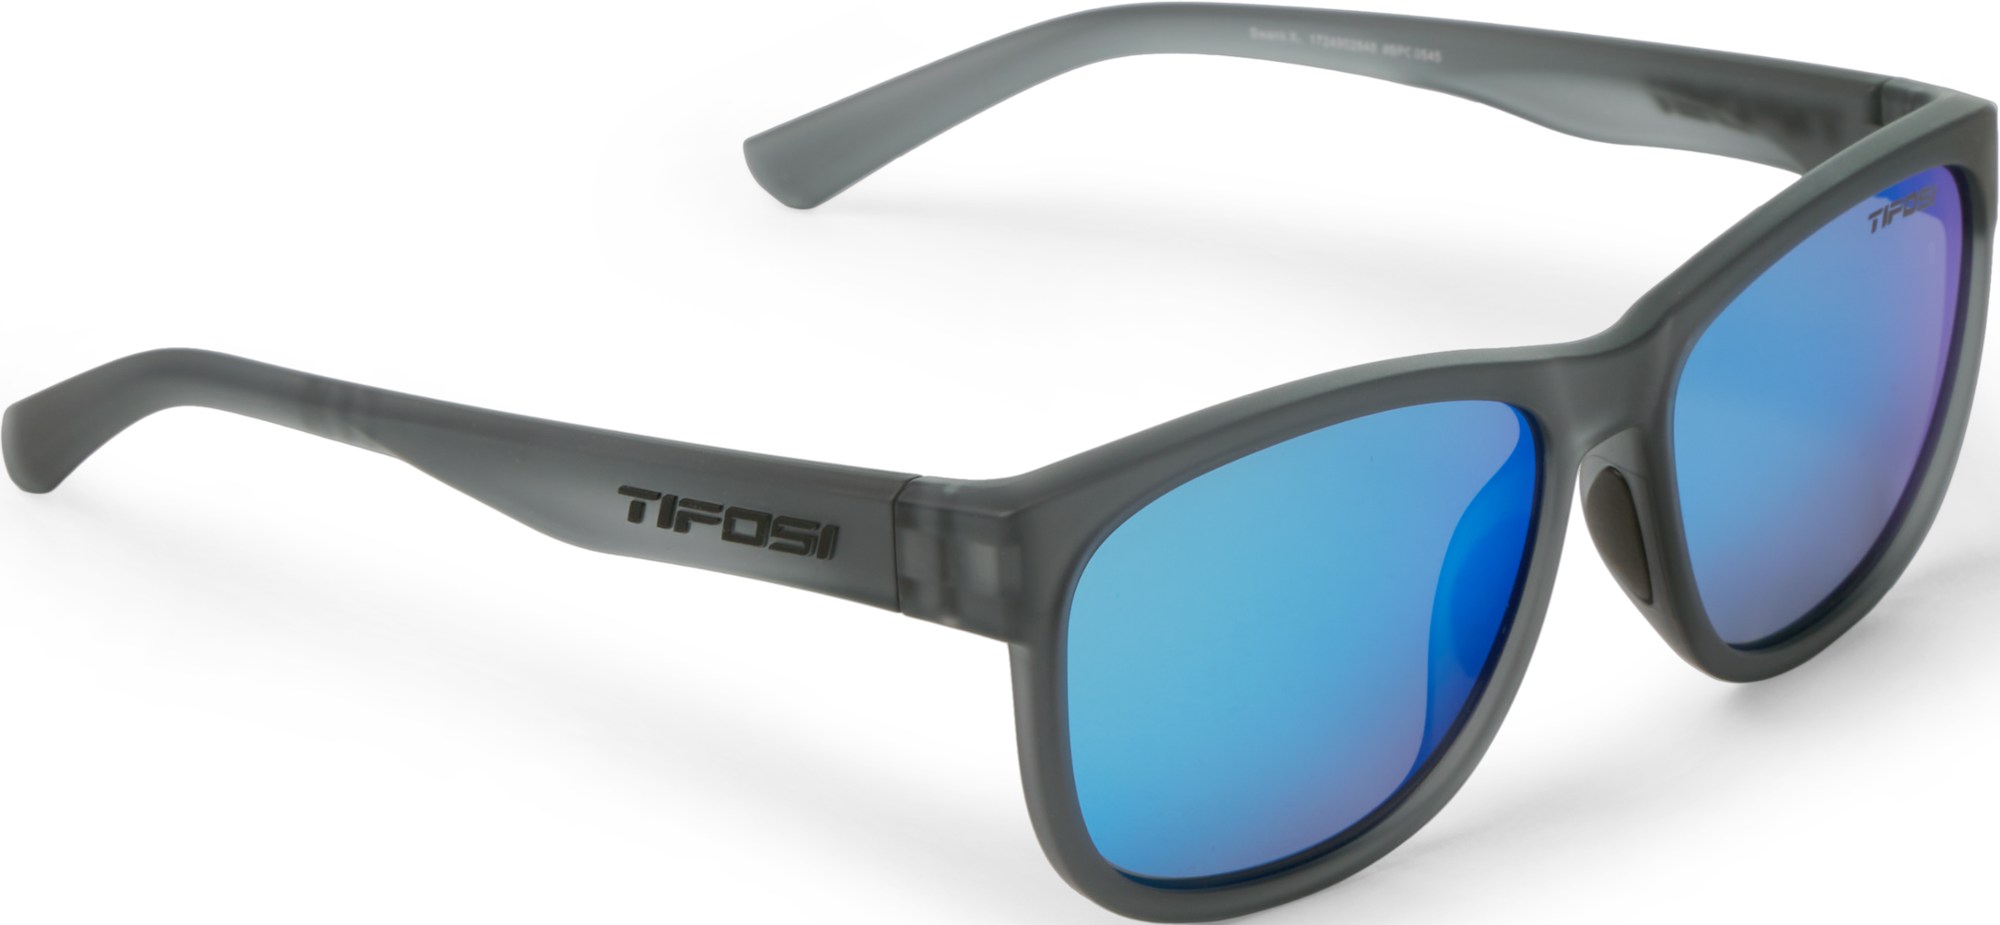 цена Поляризованные солнцезащитные очки Swank XL Tifosi, серый